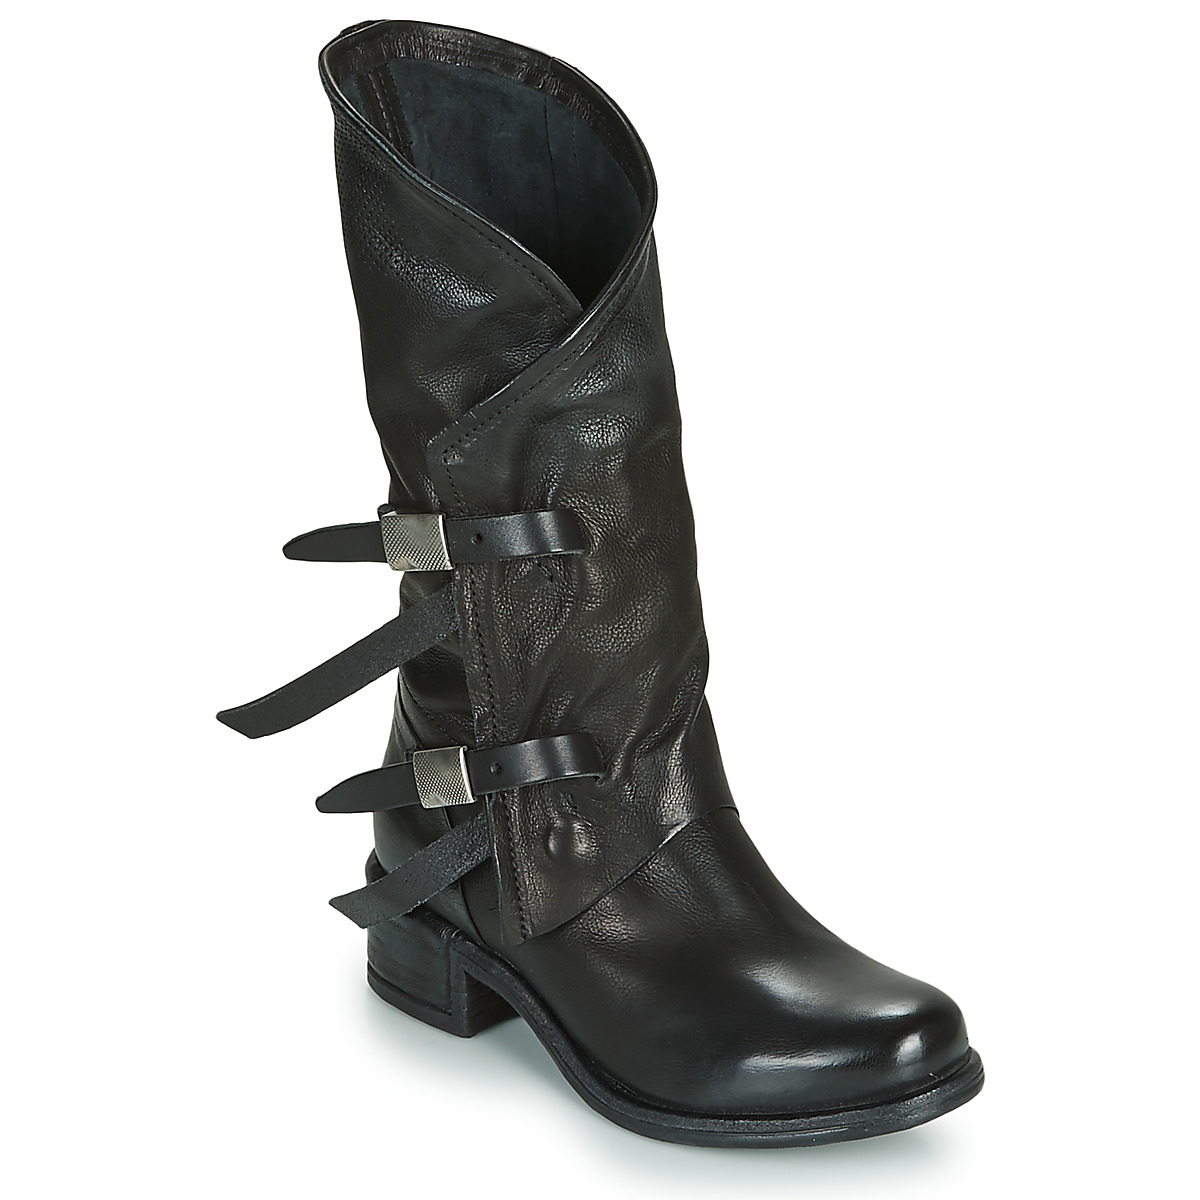 AS98女鞋子圆头长筒靴正品气质显瘦牛皮靴子黑色冬季意大利品牌